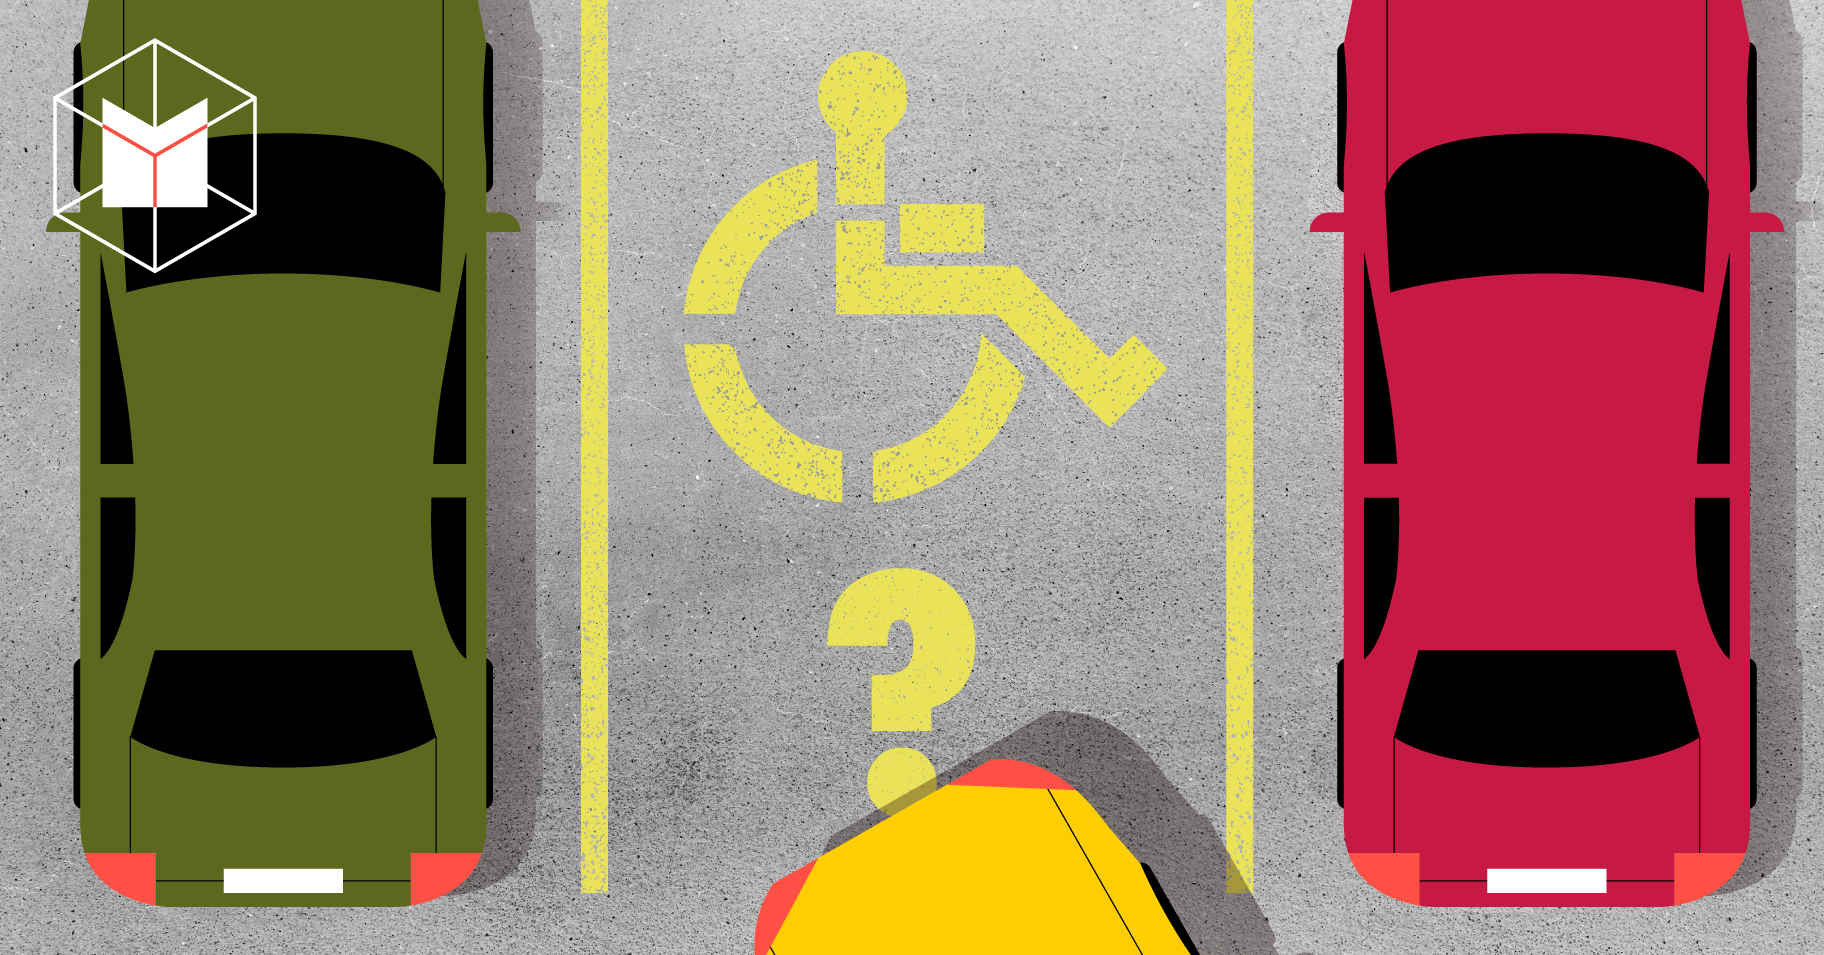 ไม่พิการ แต่จอดรถช่องคนพิการผิดไหม? เข้าใจสิทธิและการออกแบบที่จอดรถสำหรับทุก คน